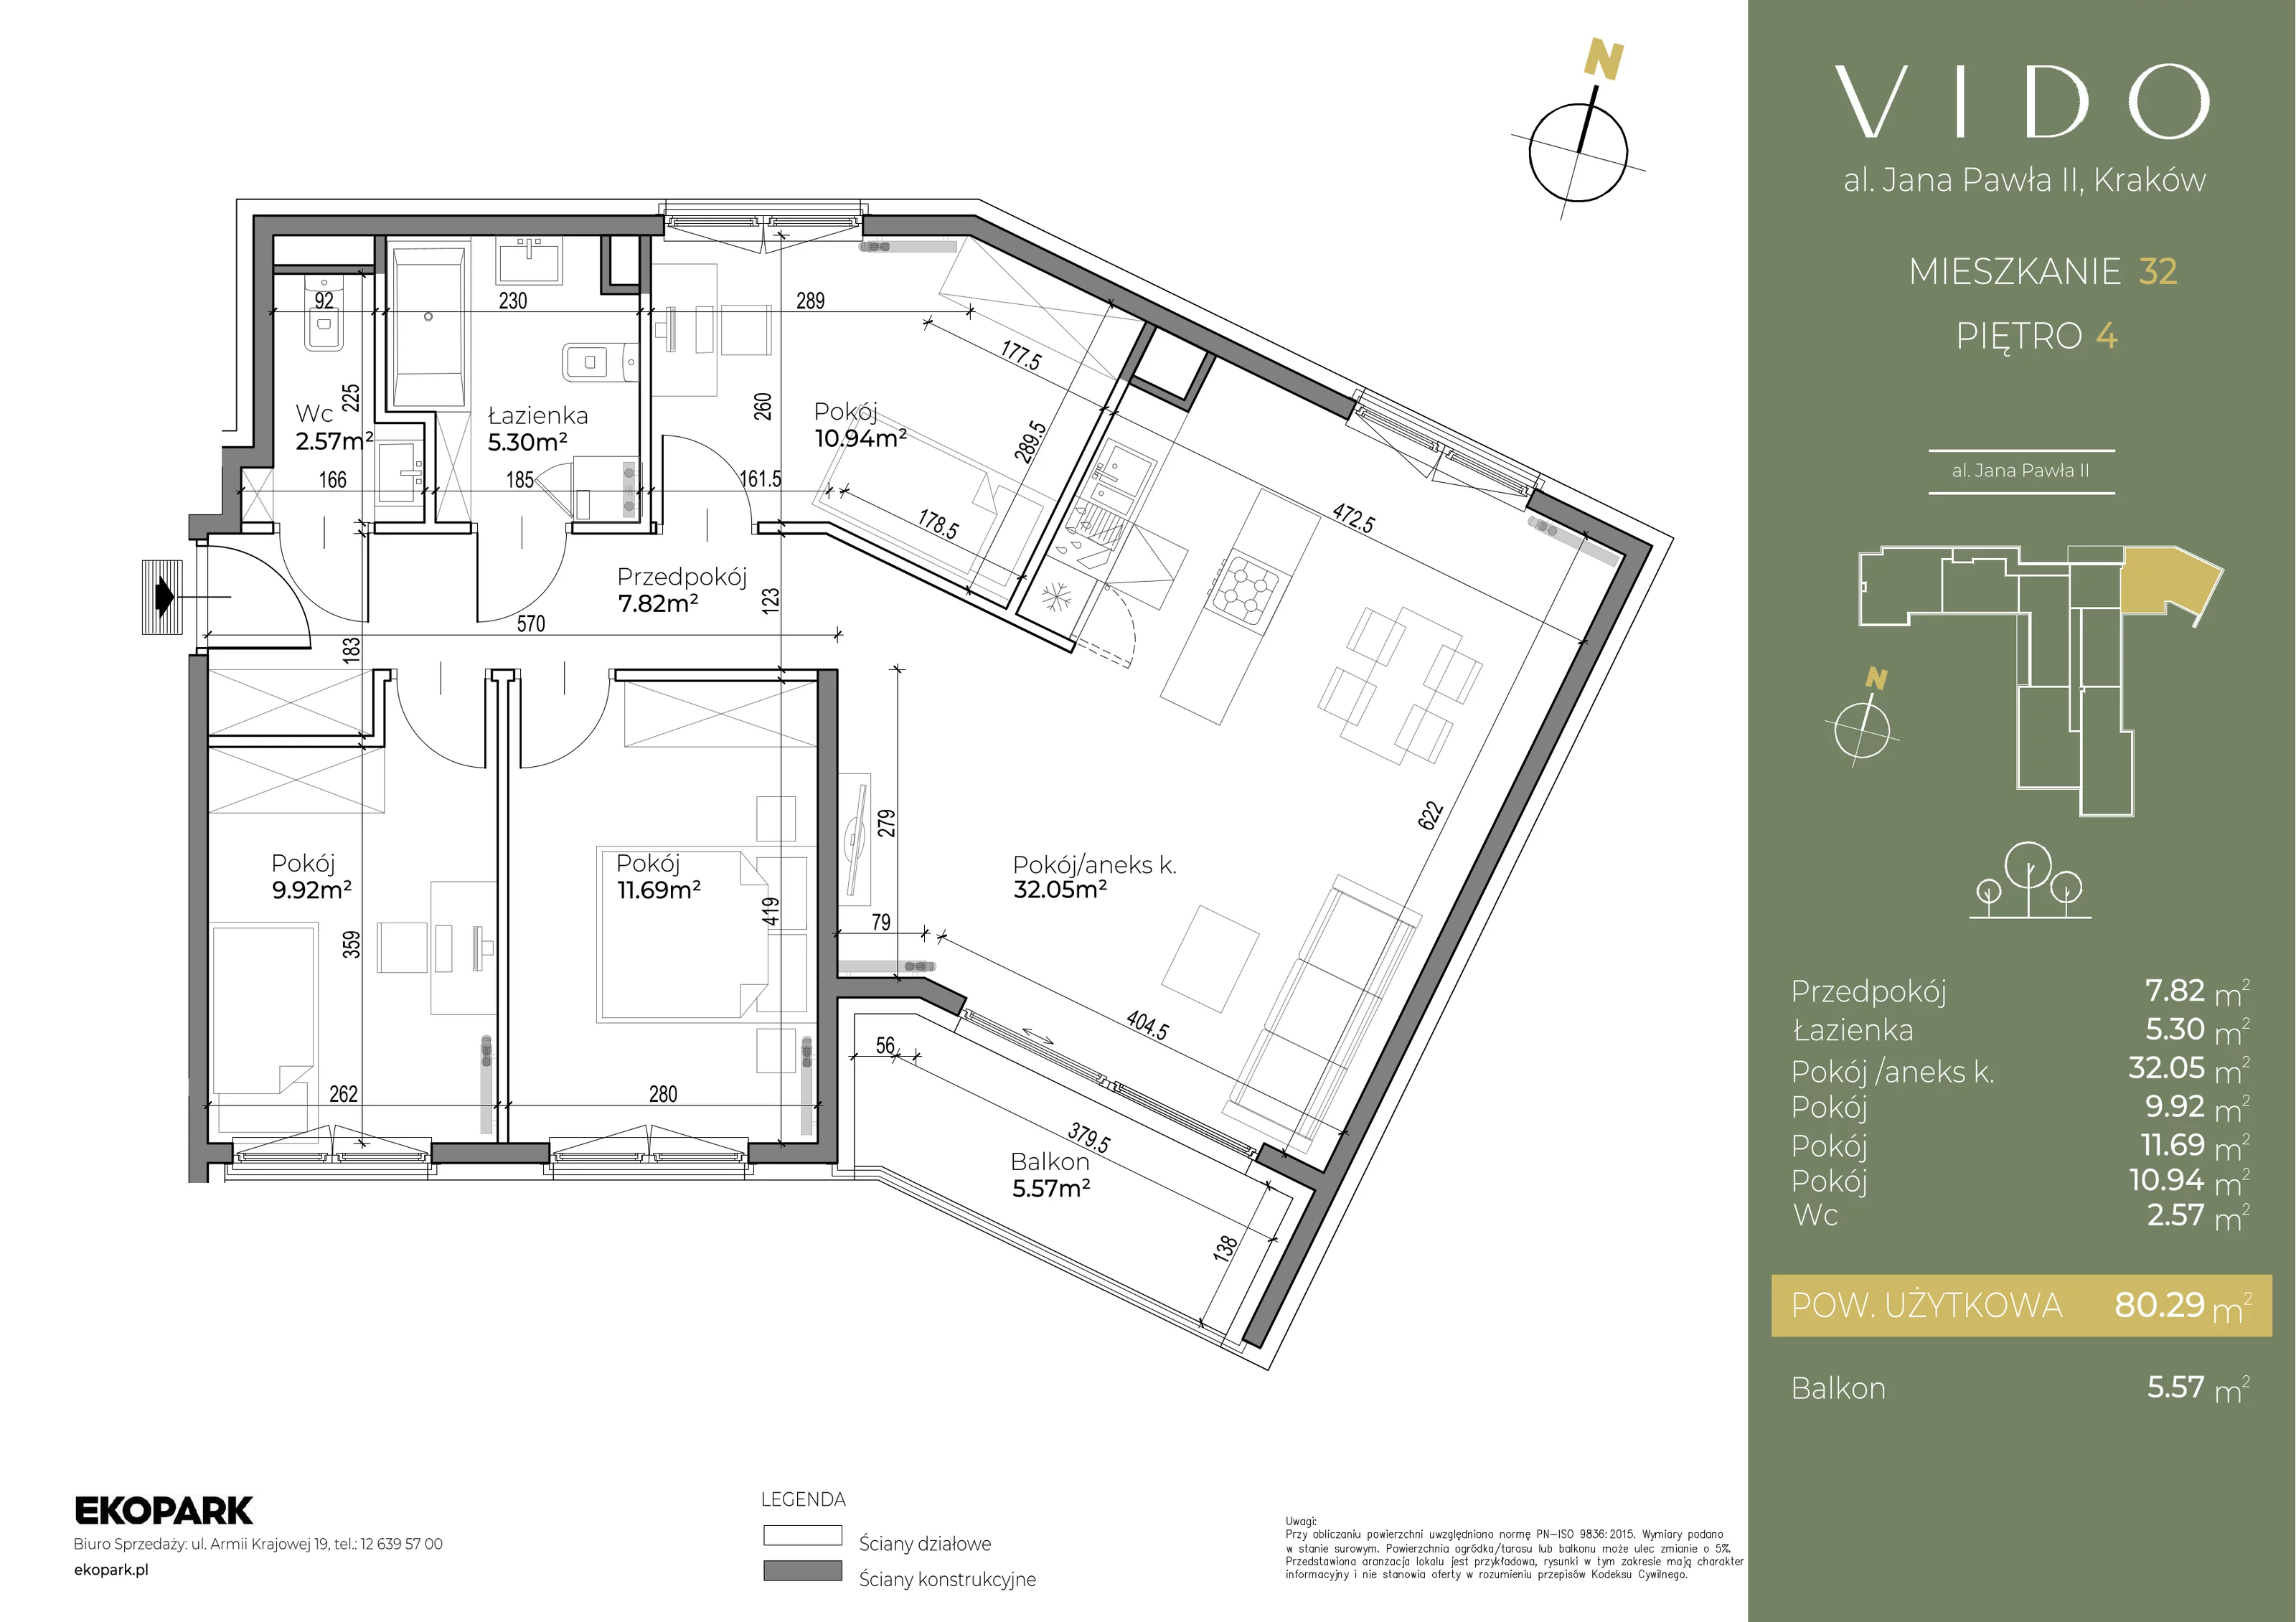 Mieszkanie 80,30 m², piętro 4, oferta nr M32, Vido, Kraków, Prądnik Czerwony, Aleja Jana Pawła II 52